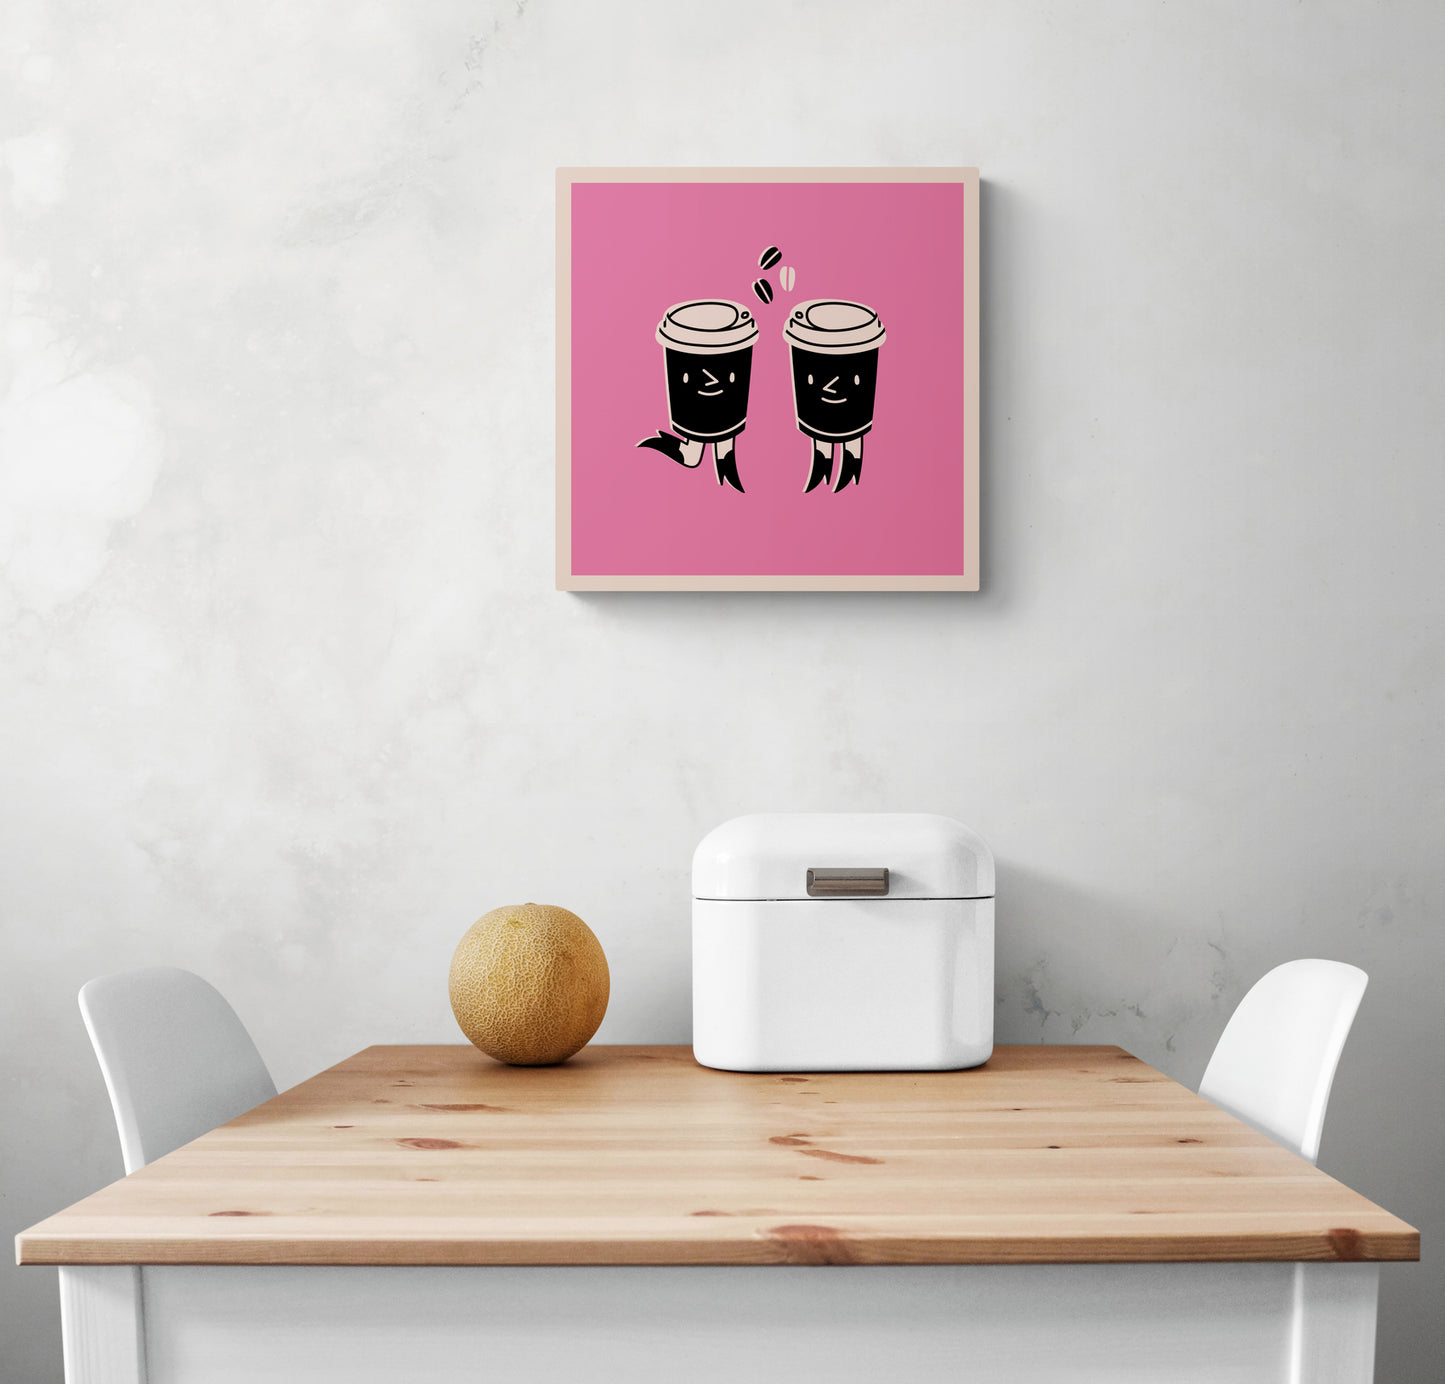 Un petit Tableau rose dans une cuisine blanche. Ce tableau cuisine est placé au-dessus d'une table en bois et deux chaises sont de chaque côté. Une boîte à pain en métal blanc et un melon sont sur la table